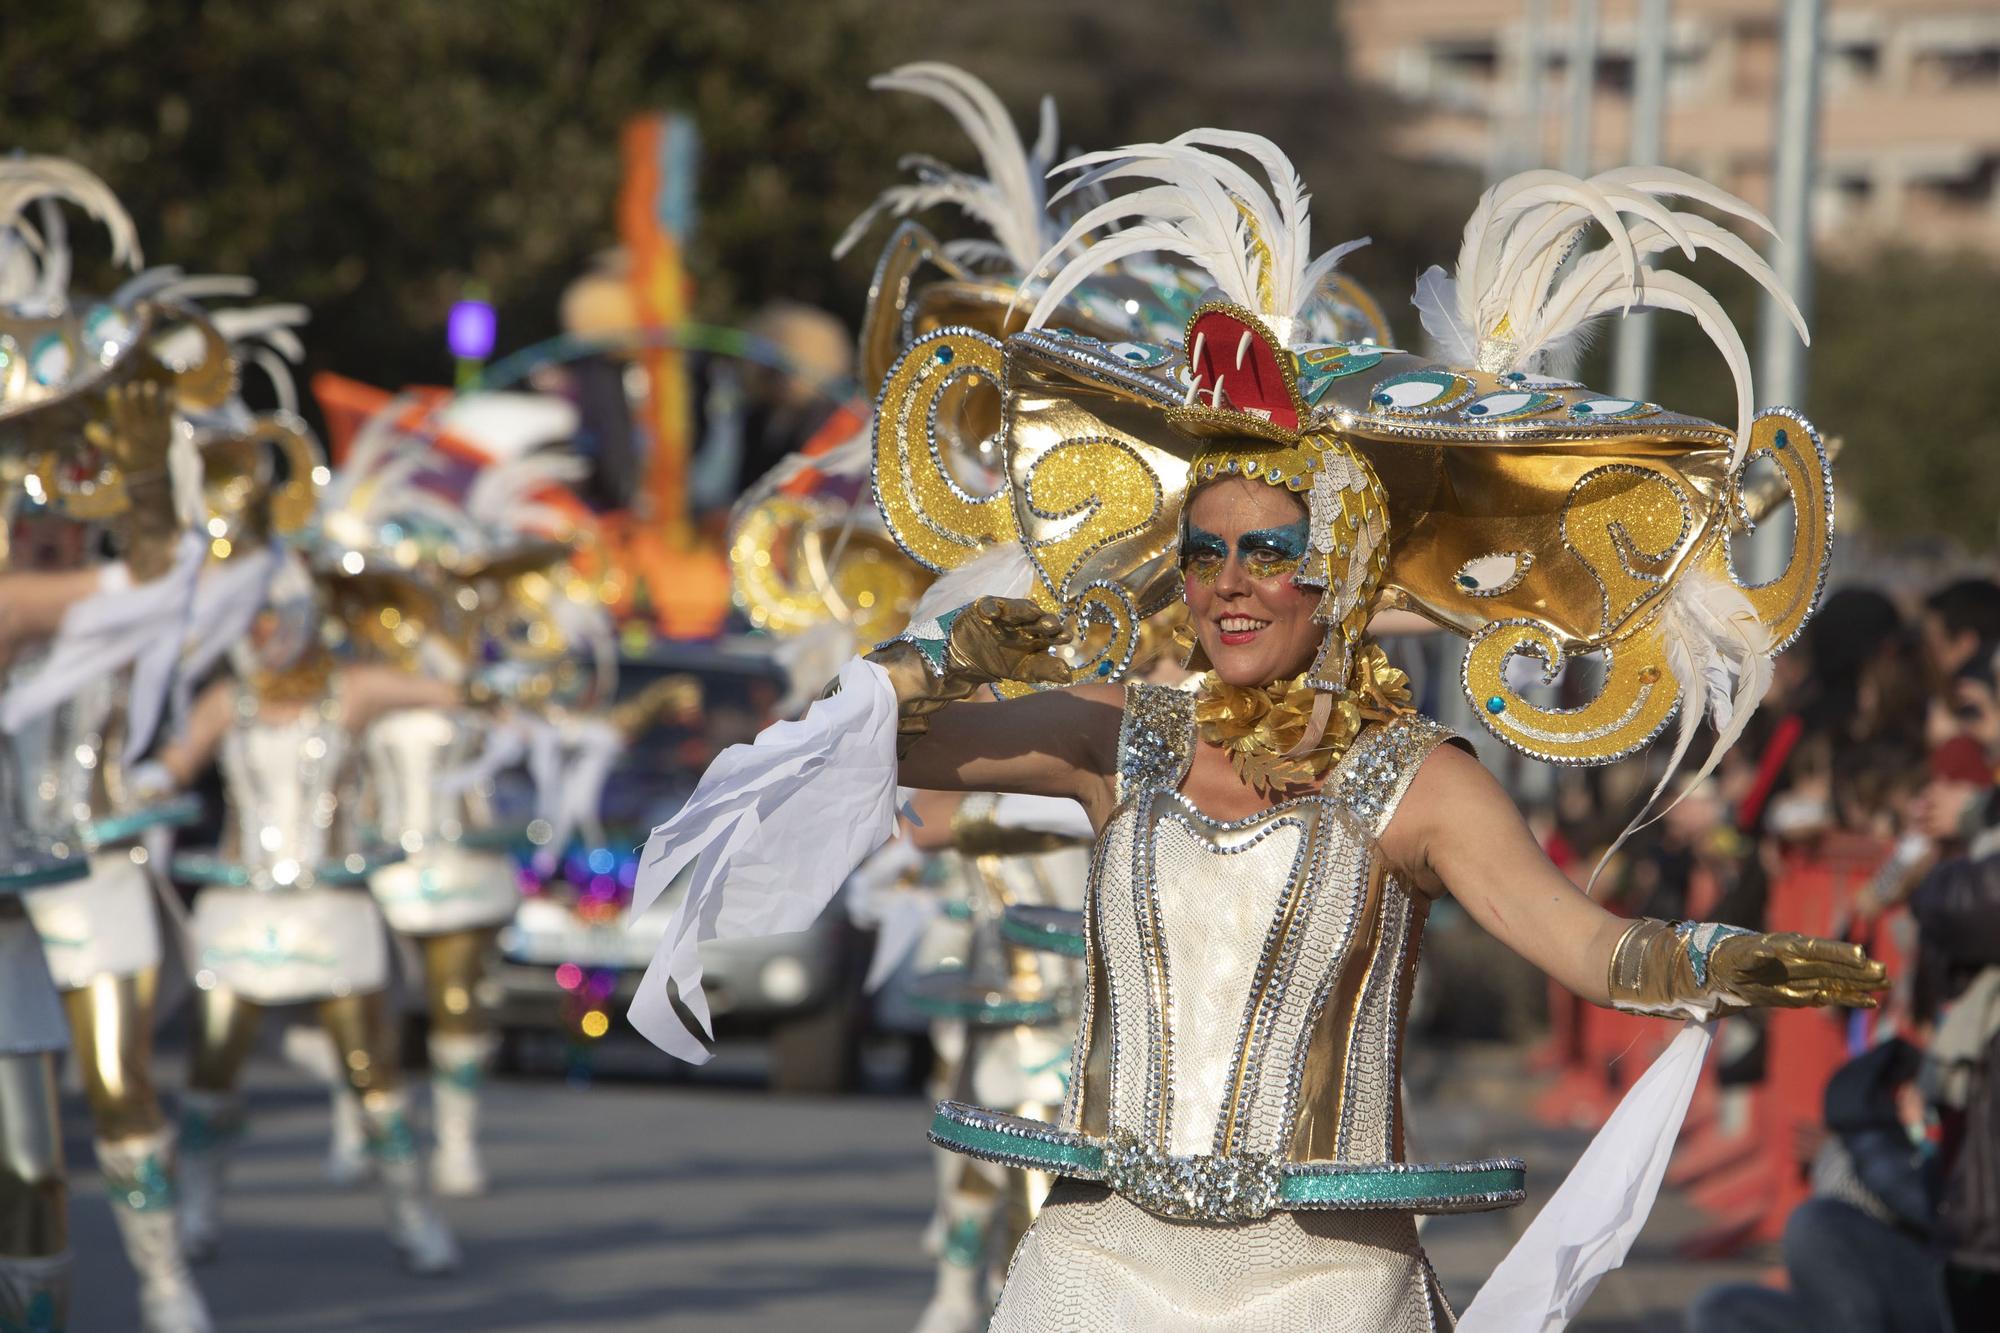 Totes les imatges del Carnaval de Tossa